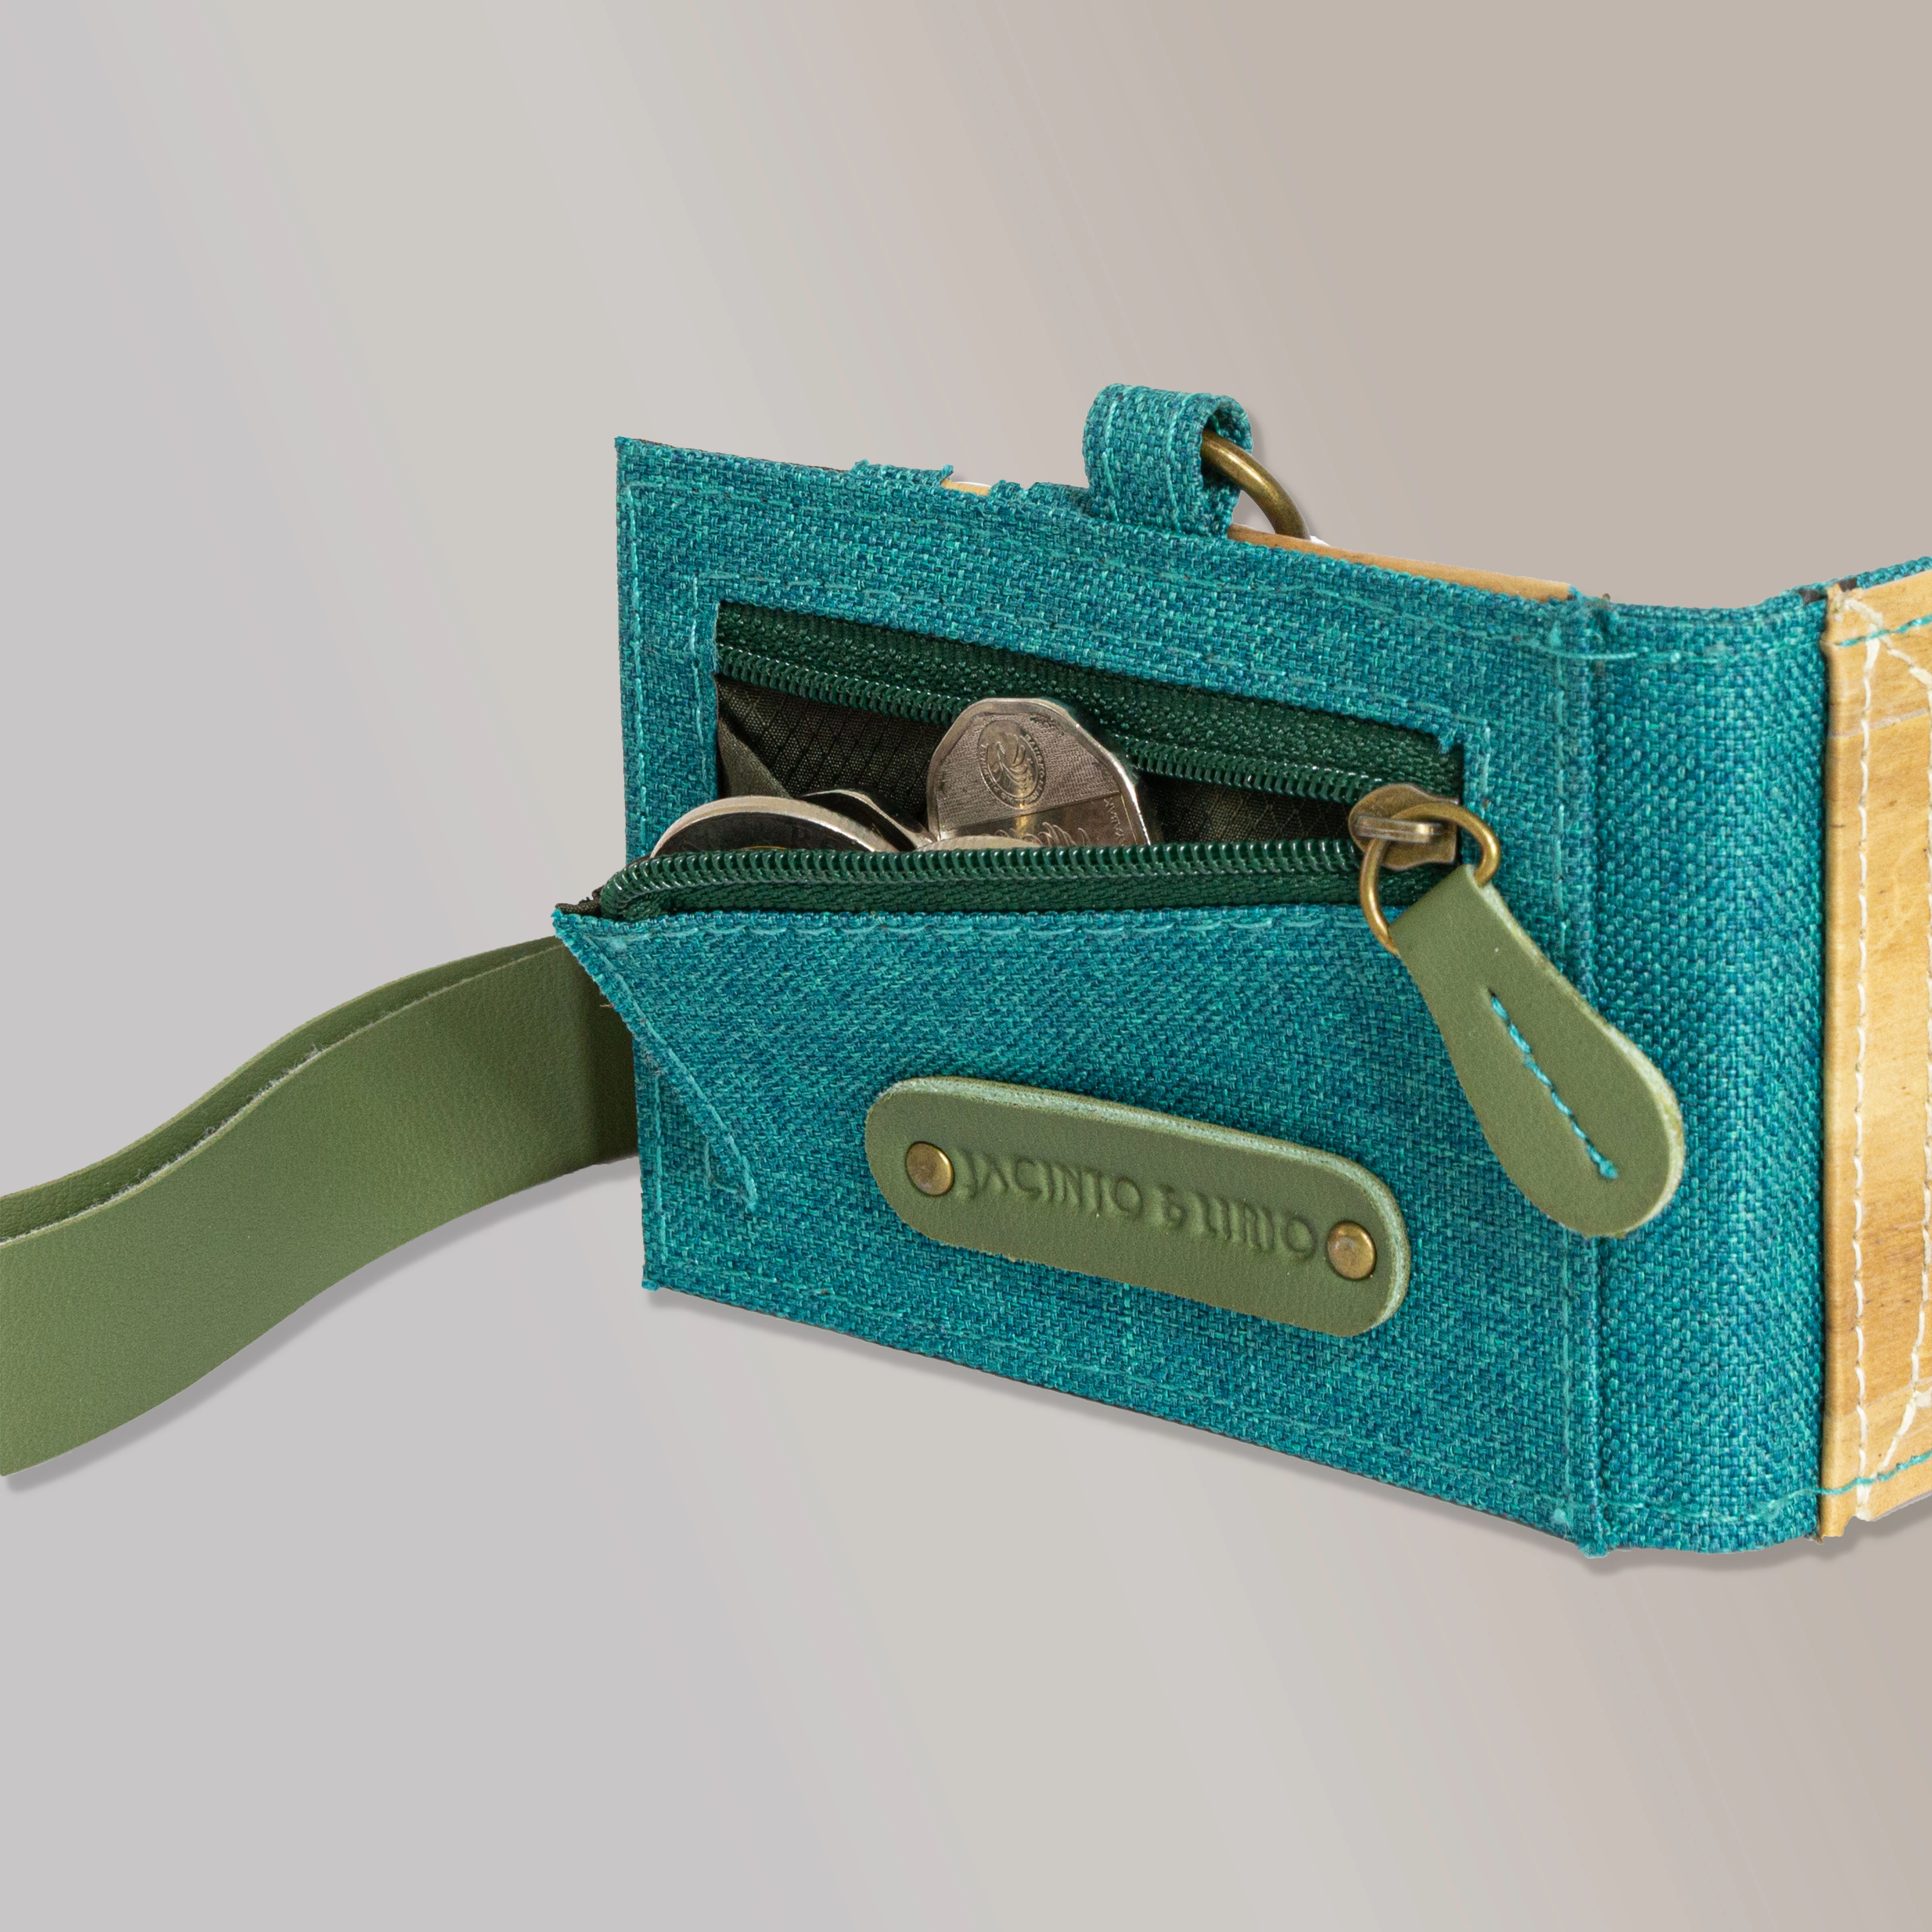 Icon velvet handbag Tom Ford Green in Velvet - 39837561